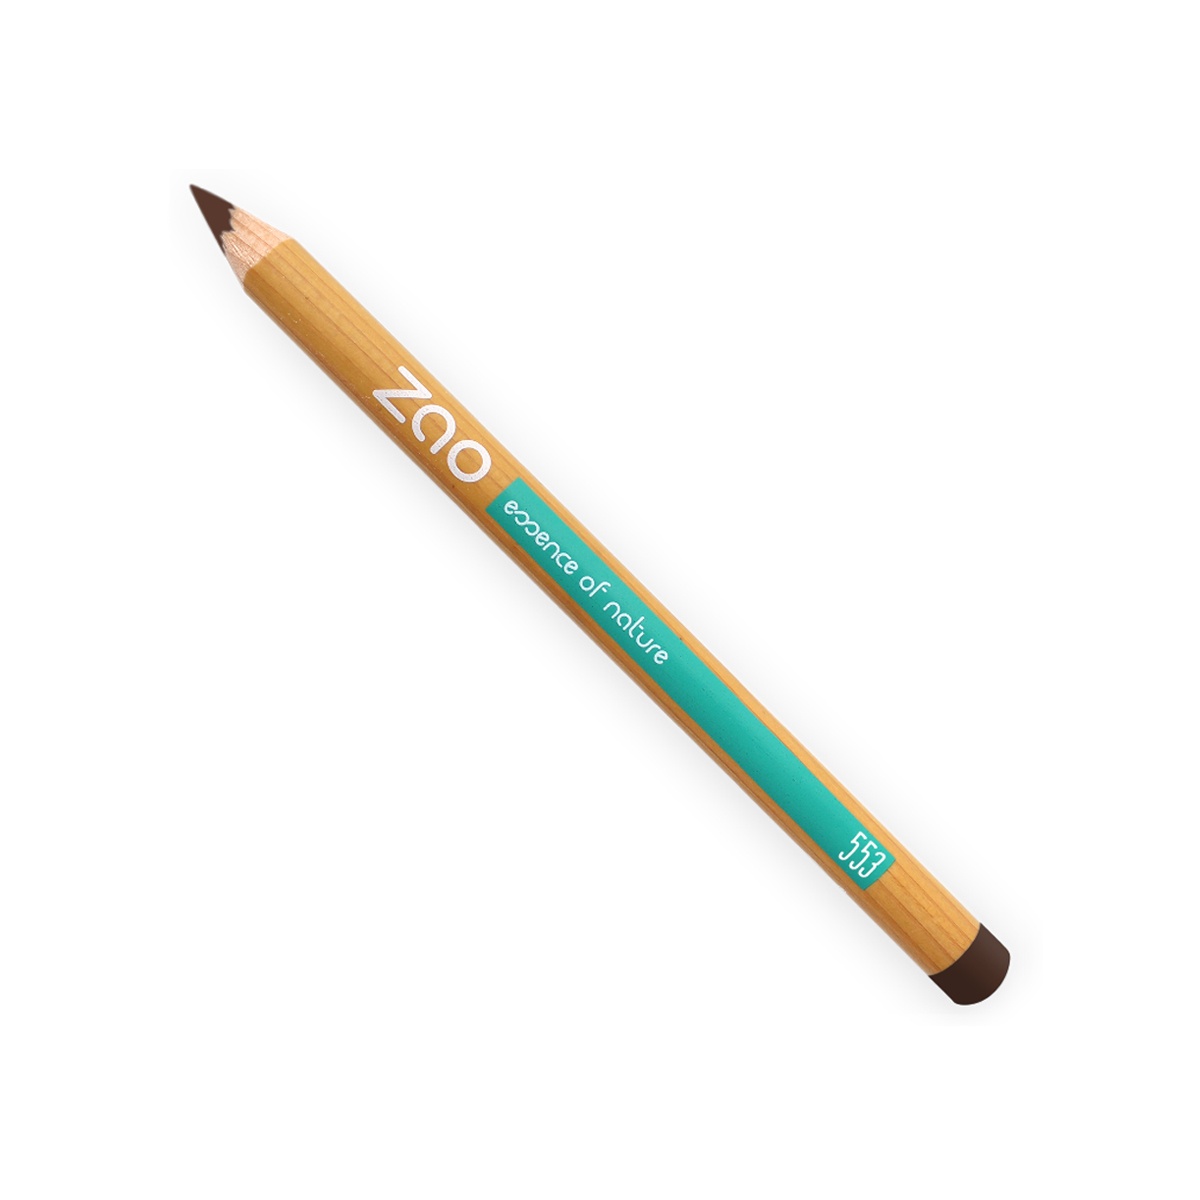 Zao Vegan Makeup Pencil - Medium Brown 553 - Peace With The Wild